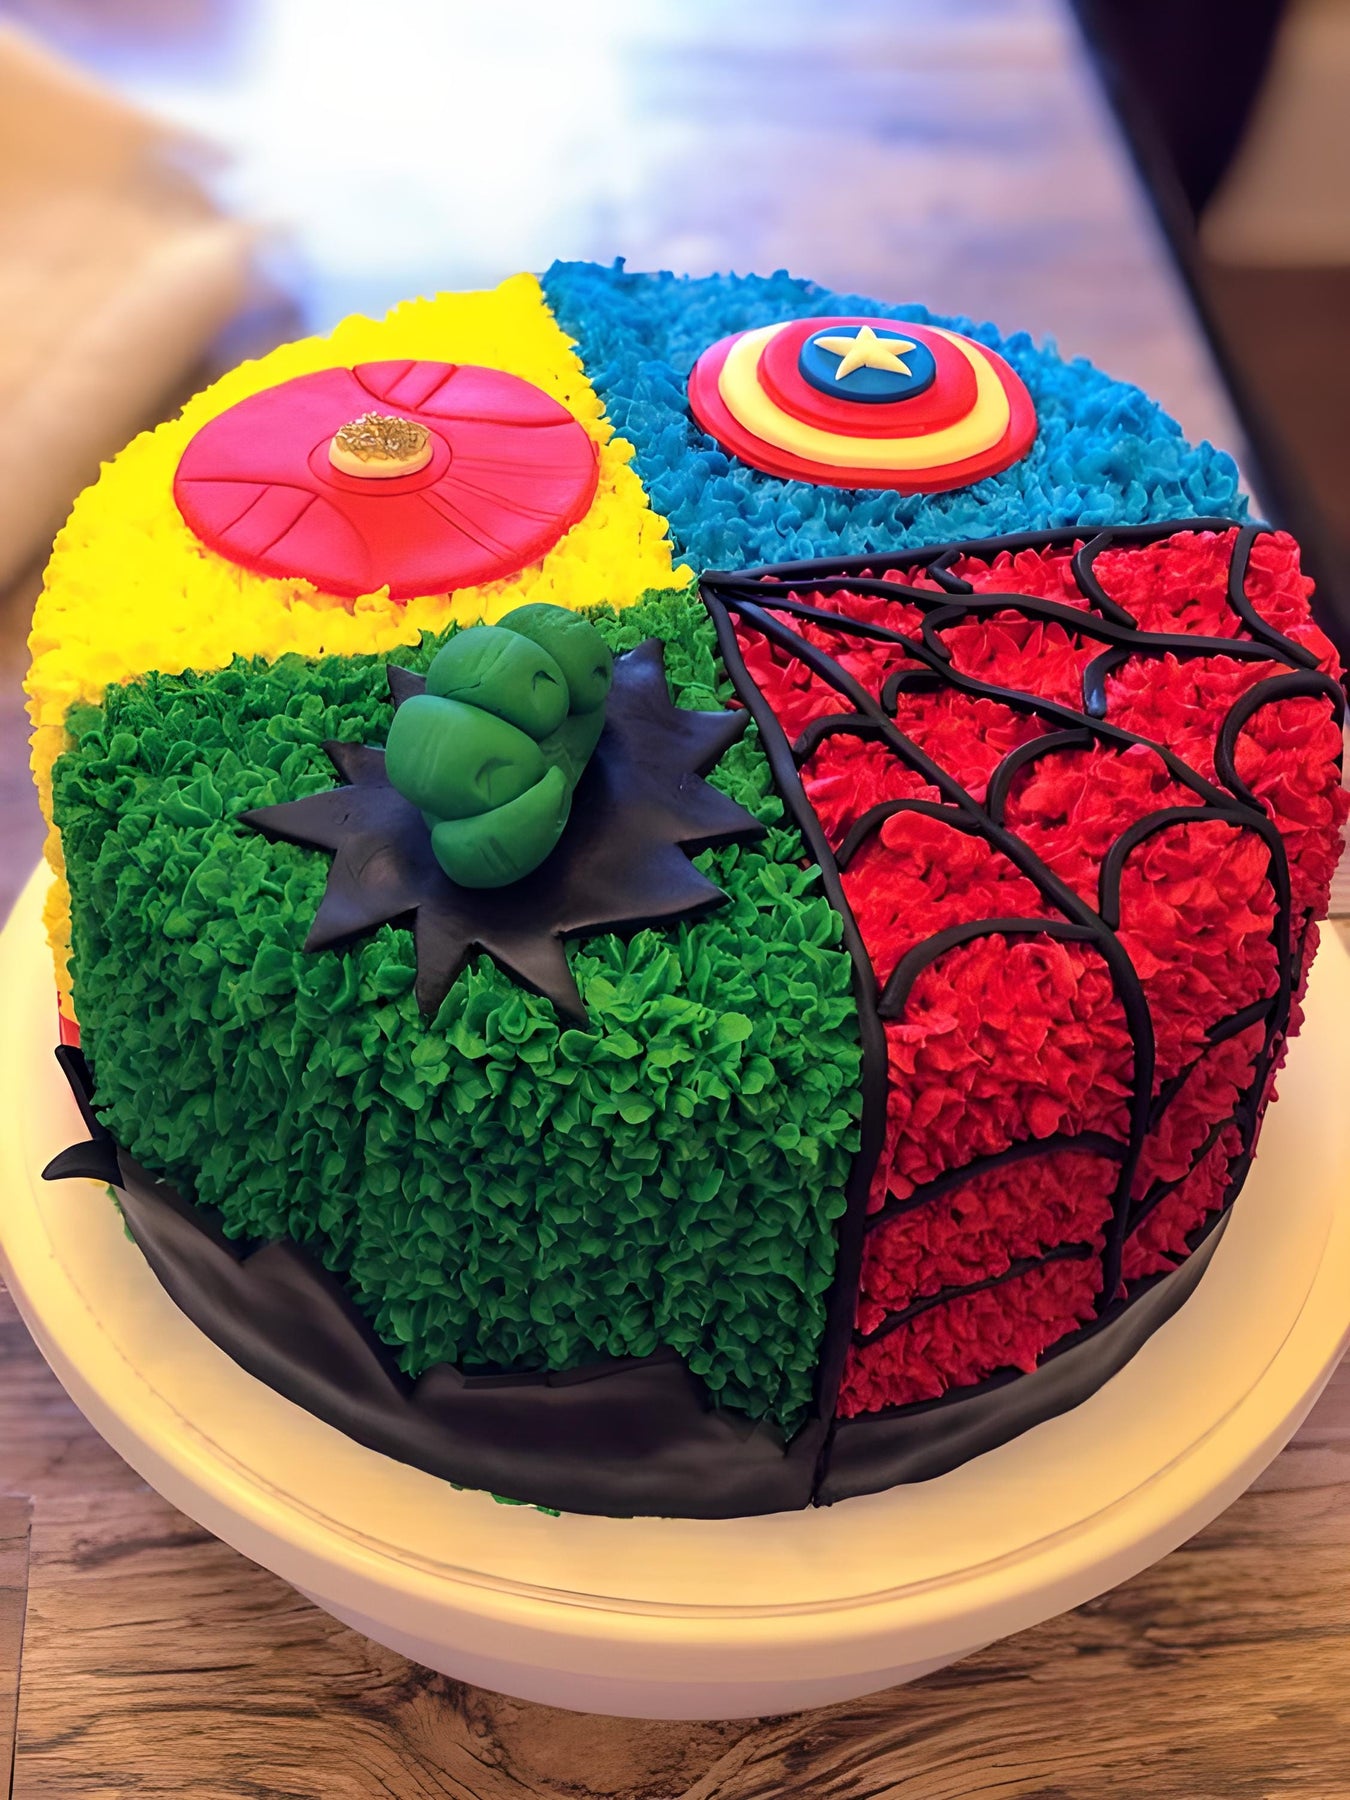 How to make an AVENGERS CAKE - SUPERHERO CAKE - Captain America, Thor,  Hulk, Ironman - YouTube